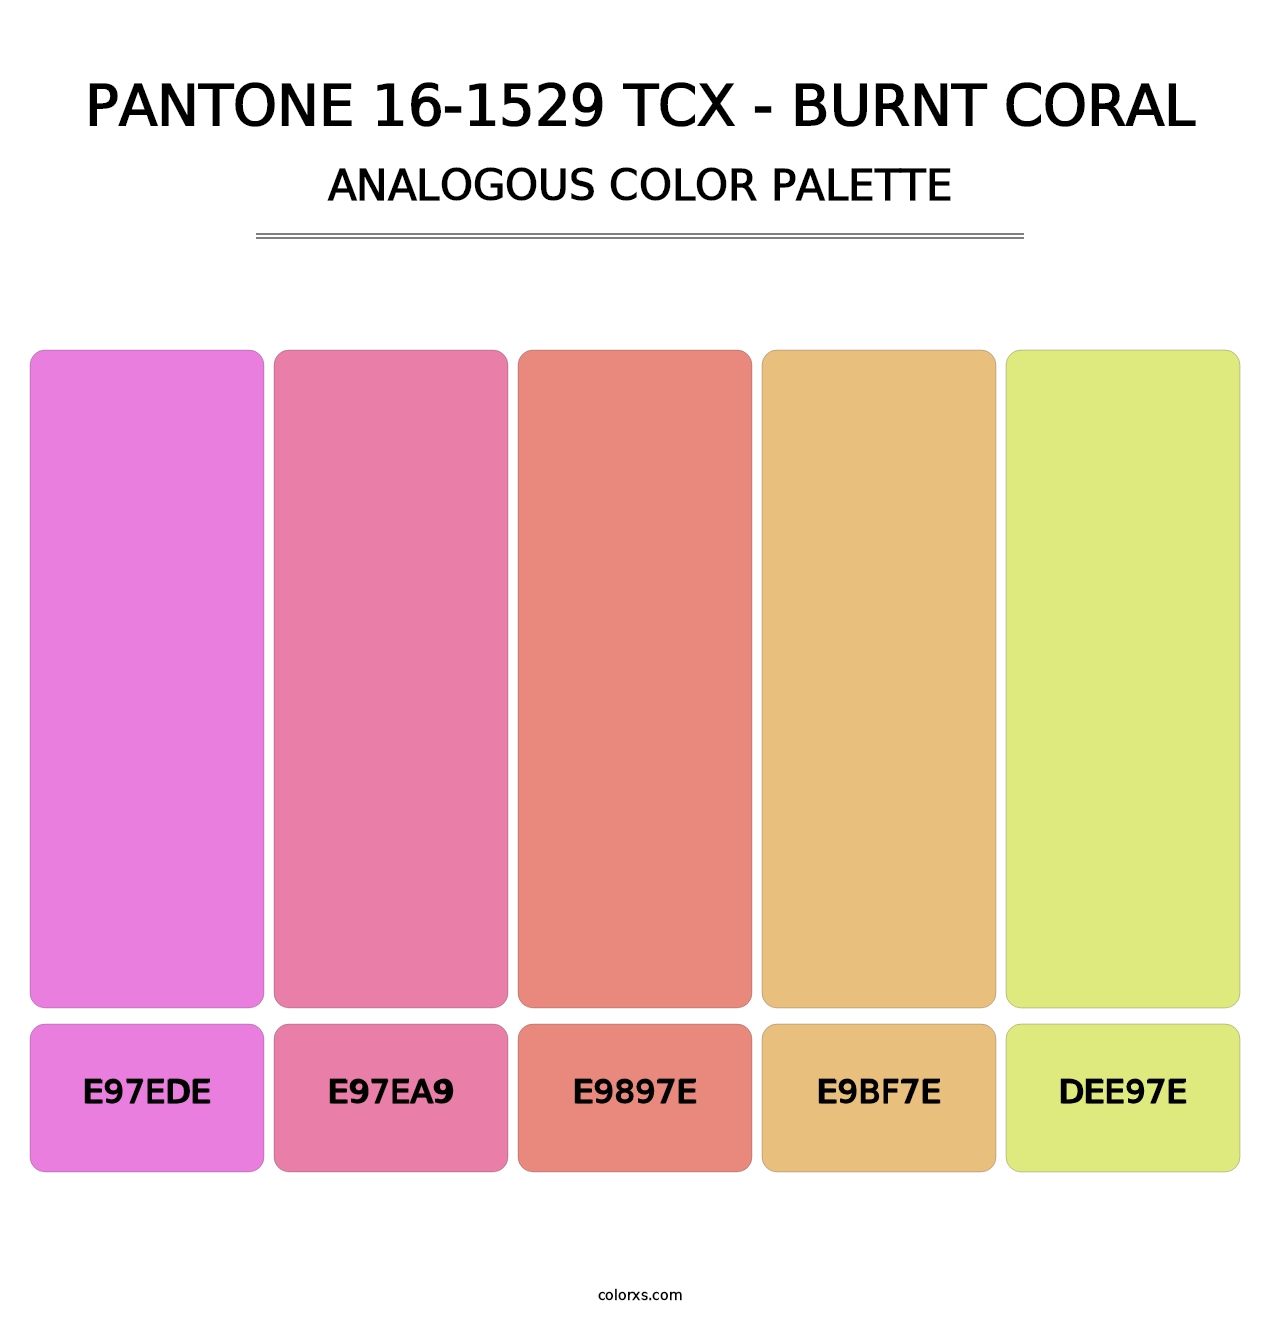 PANTONE 16-1529 TCX - Burnt Coral - Analogous Color Palette